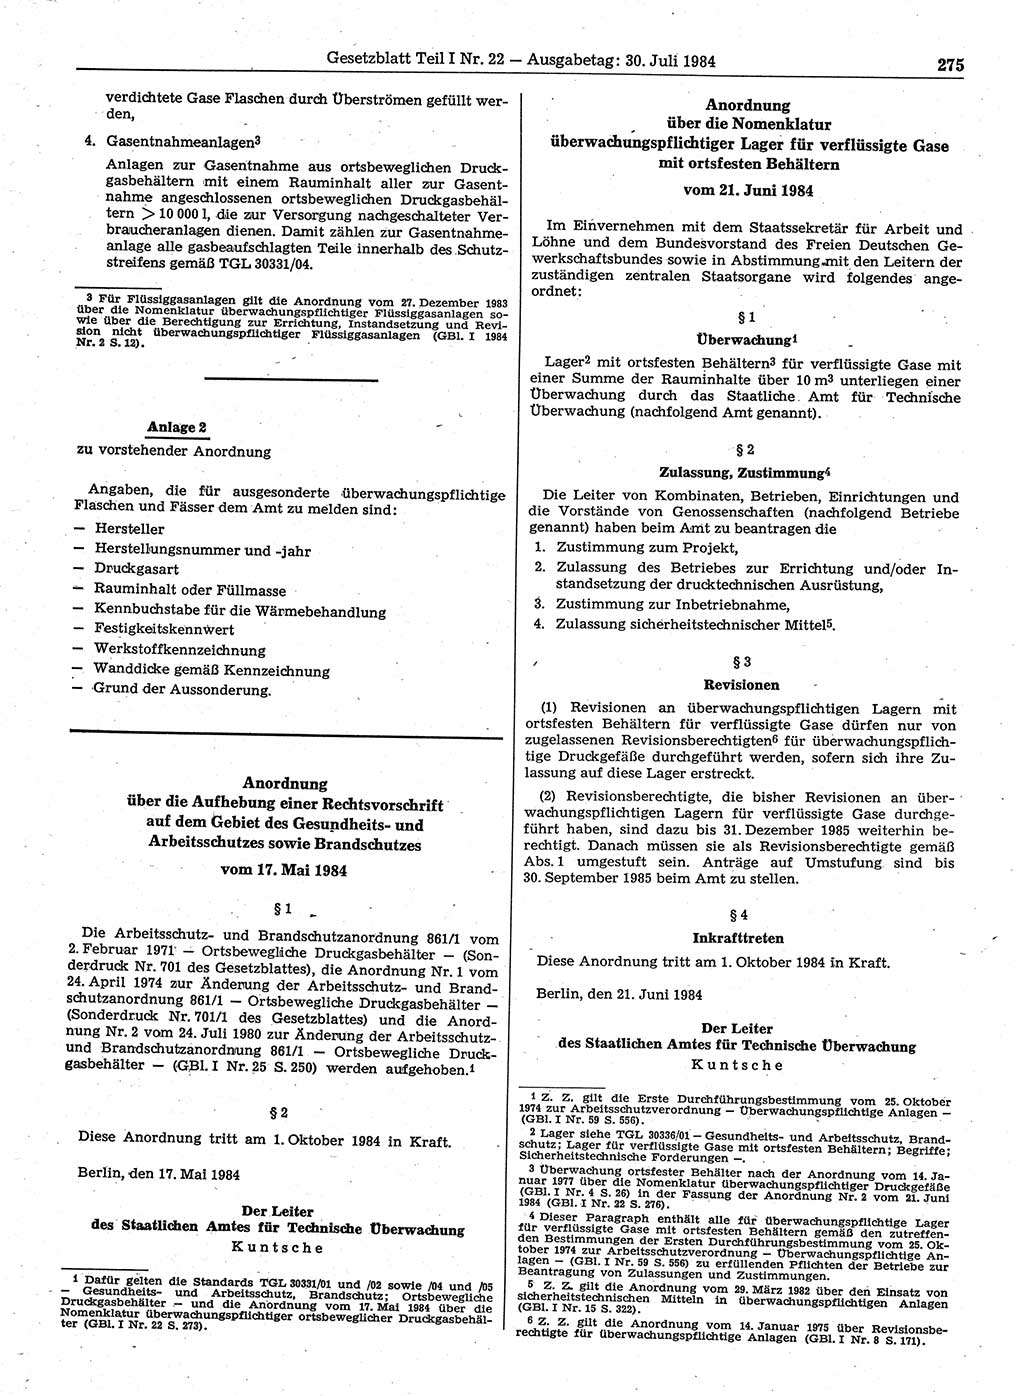 Gesetzblatt (GBl.) der Deutschen Demokratischen Republik (DDR) Teil Ⅰ 1984, Seite 275 (GBl. DDR Ⅰ 1984, S. 275)